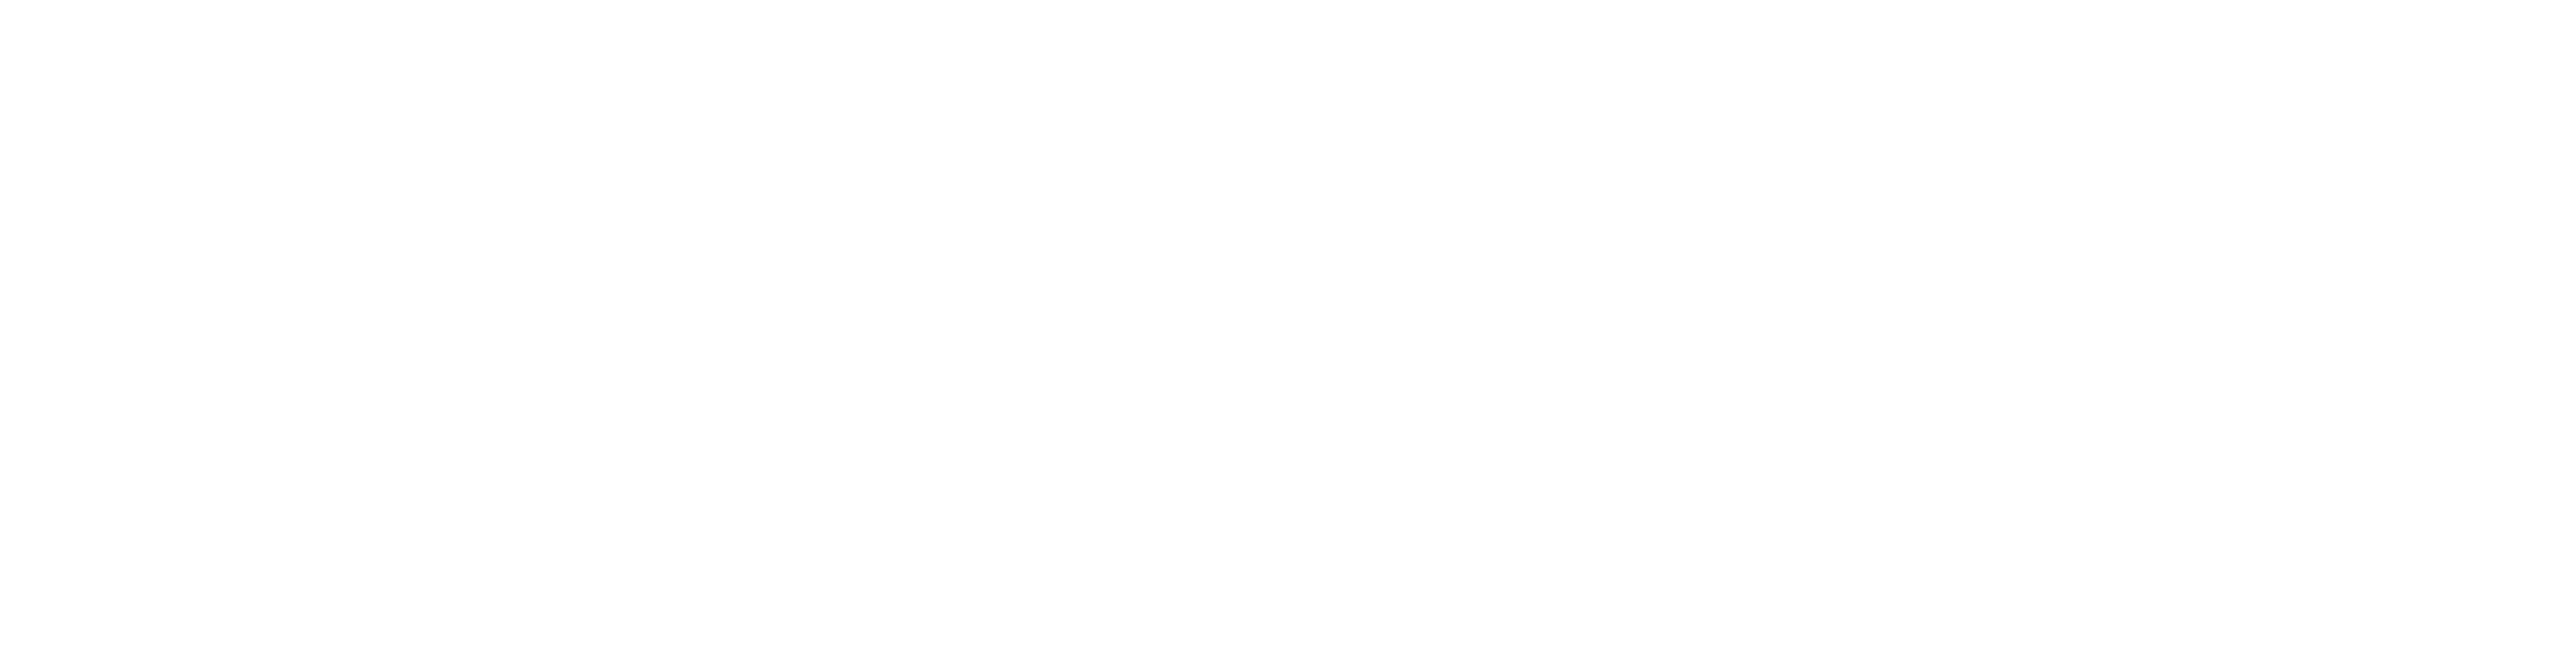 Logo Bauer Gruppe